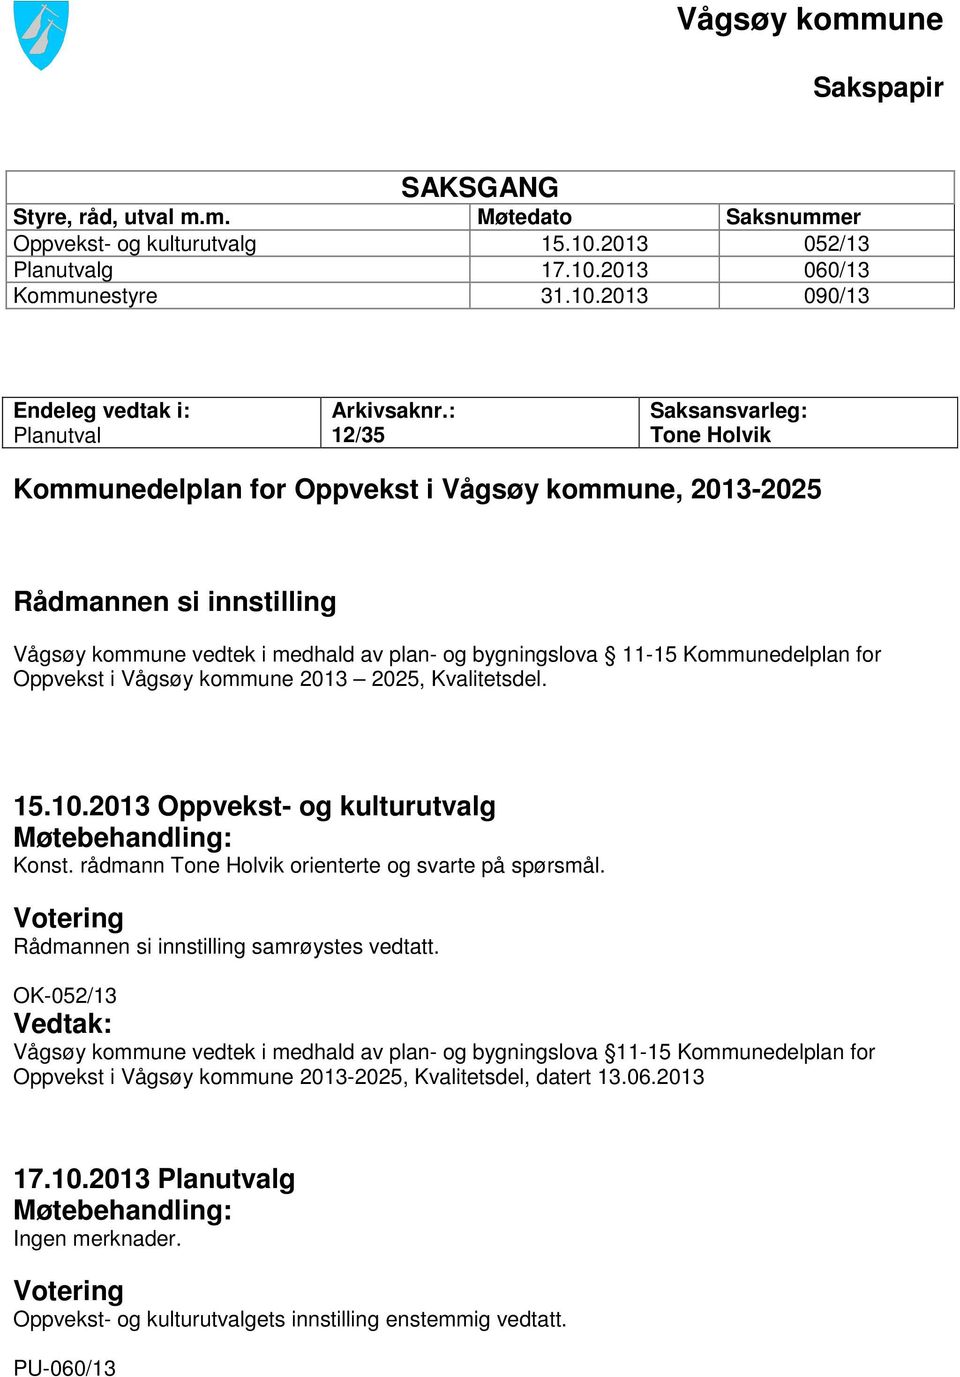 Oppvekst i Vågsøy kommune 2013 2025, Kvalitetsdel. 15.10.2013 Oppvekst- og kulturutvalg Møtebehandling: Konst. rådmann Tone Holvik orienterte og svarte på spørsmål.